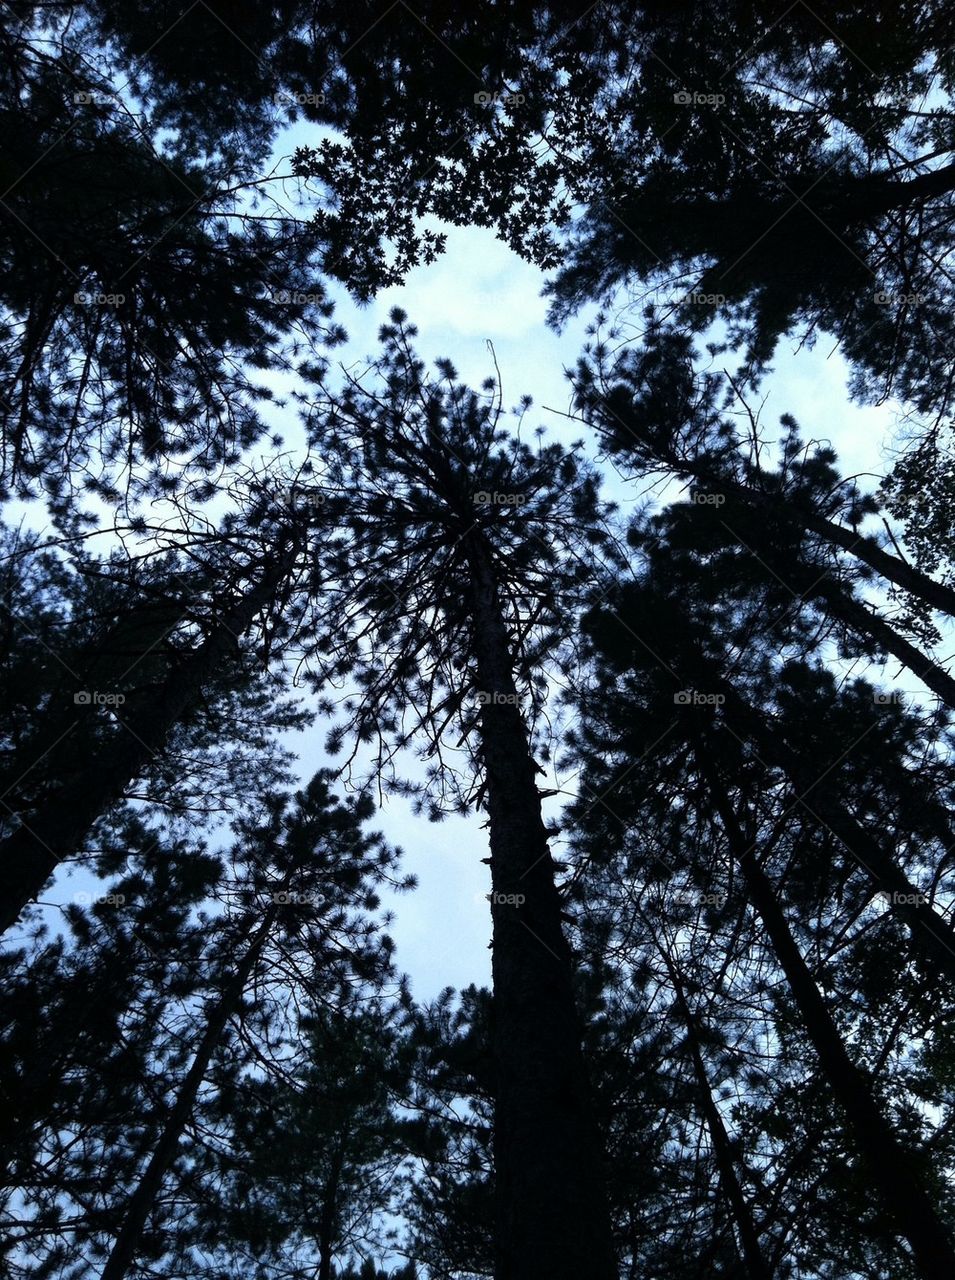 Woods of tree's